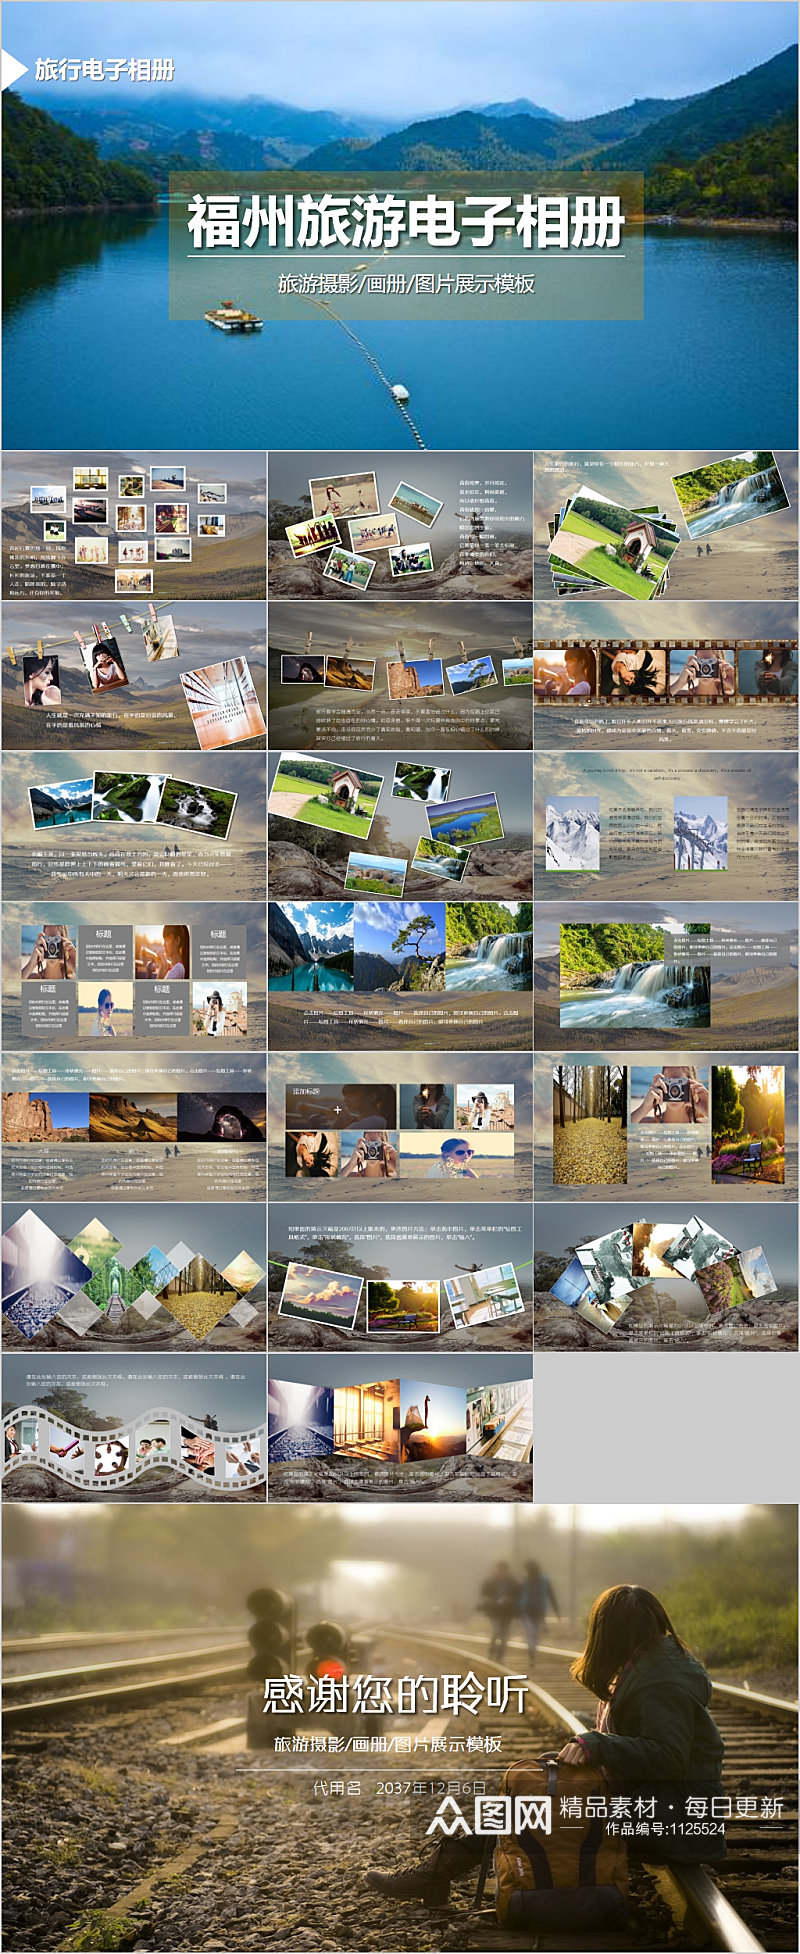 福州旅游电子相册图片展示PPT素材